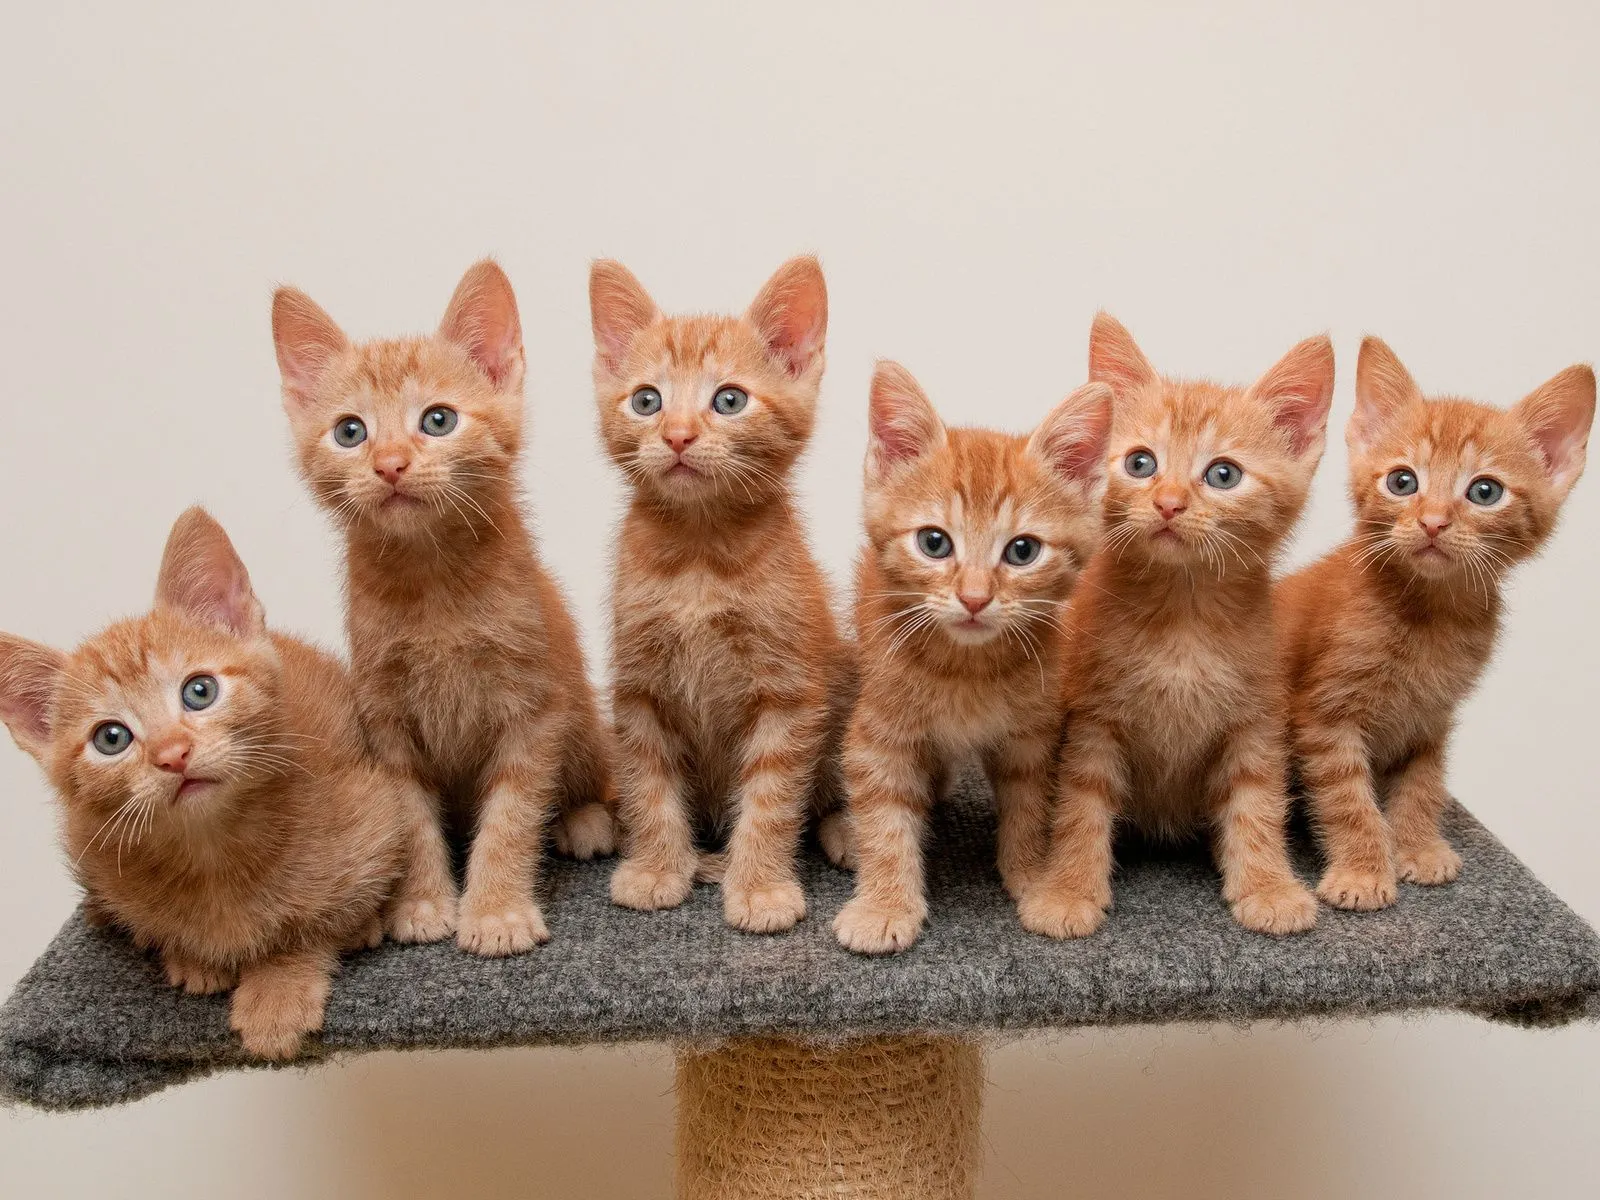 Fotos de lindos gatitos para facebook ~ Mejores Fotos del Mundo ...